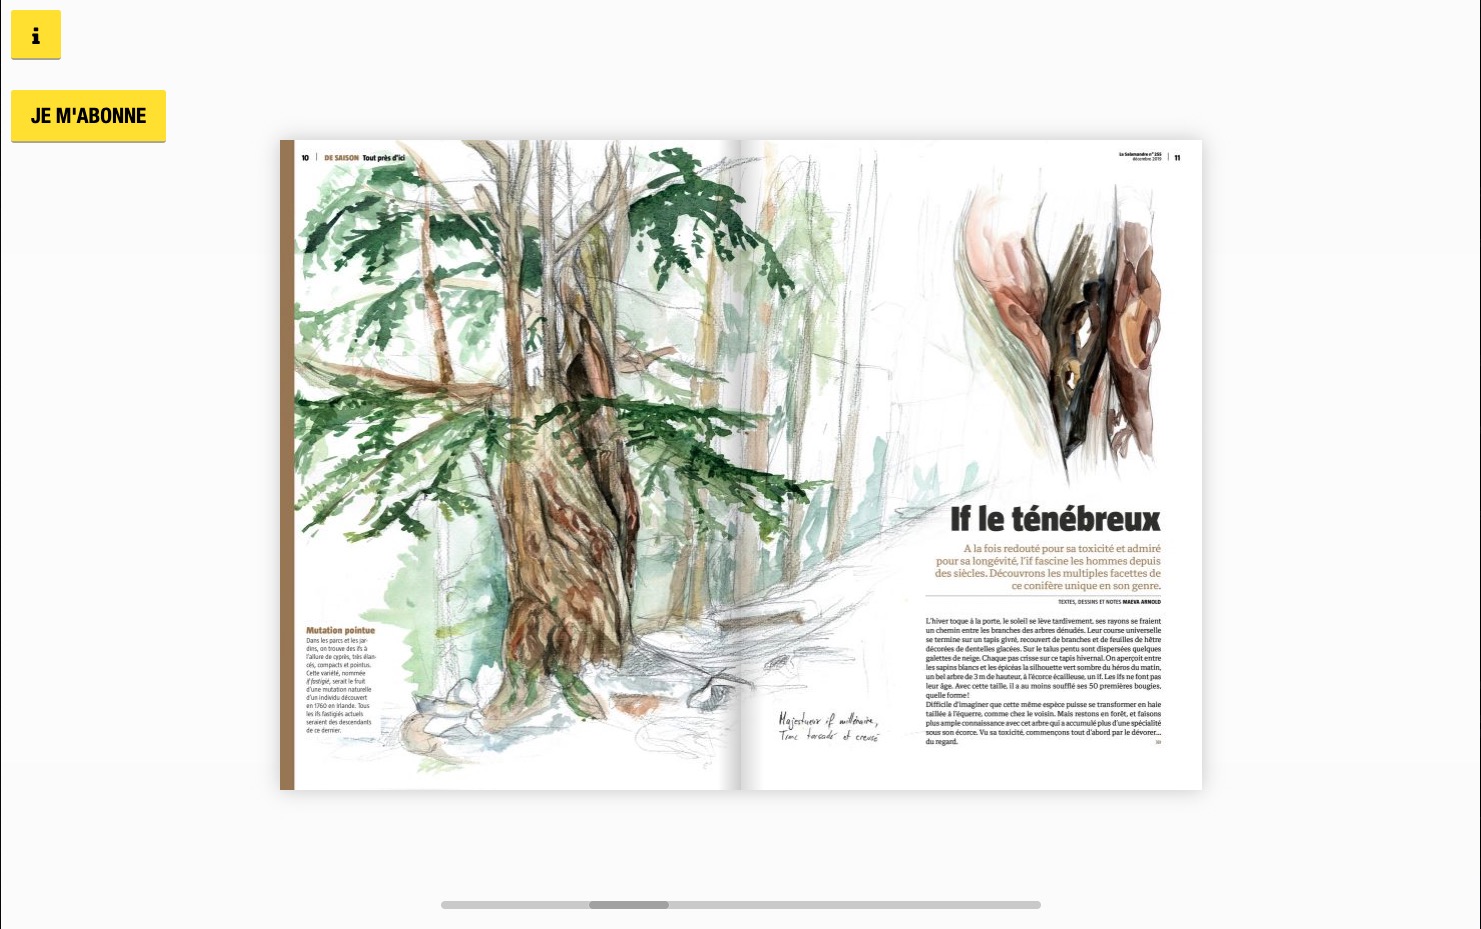 La Salamandre, vue de liseuse magazine HTML5 multi écrans